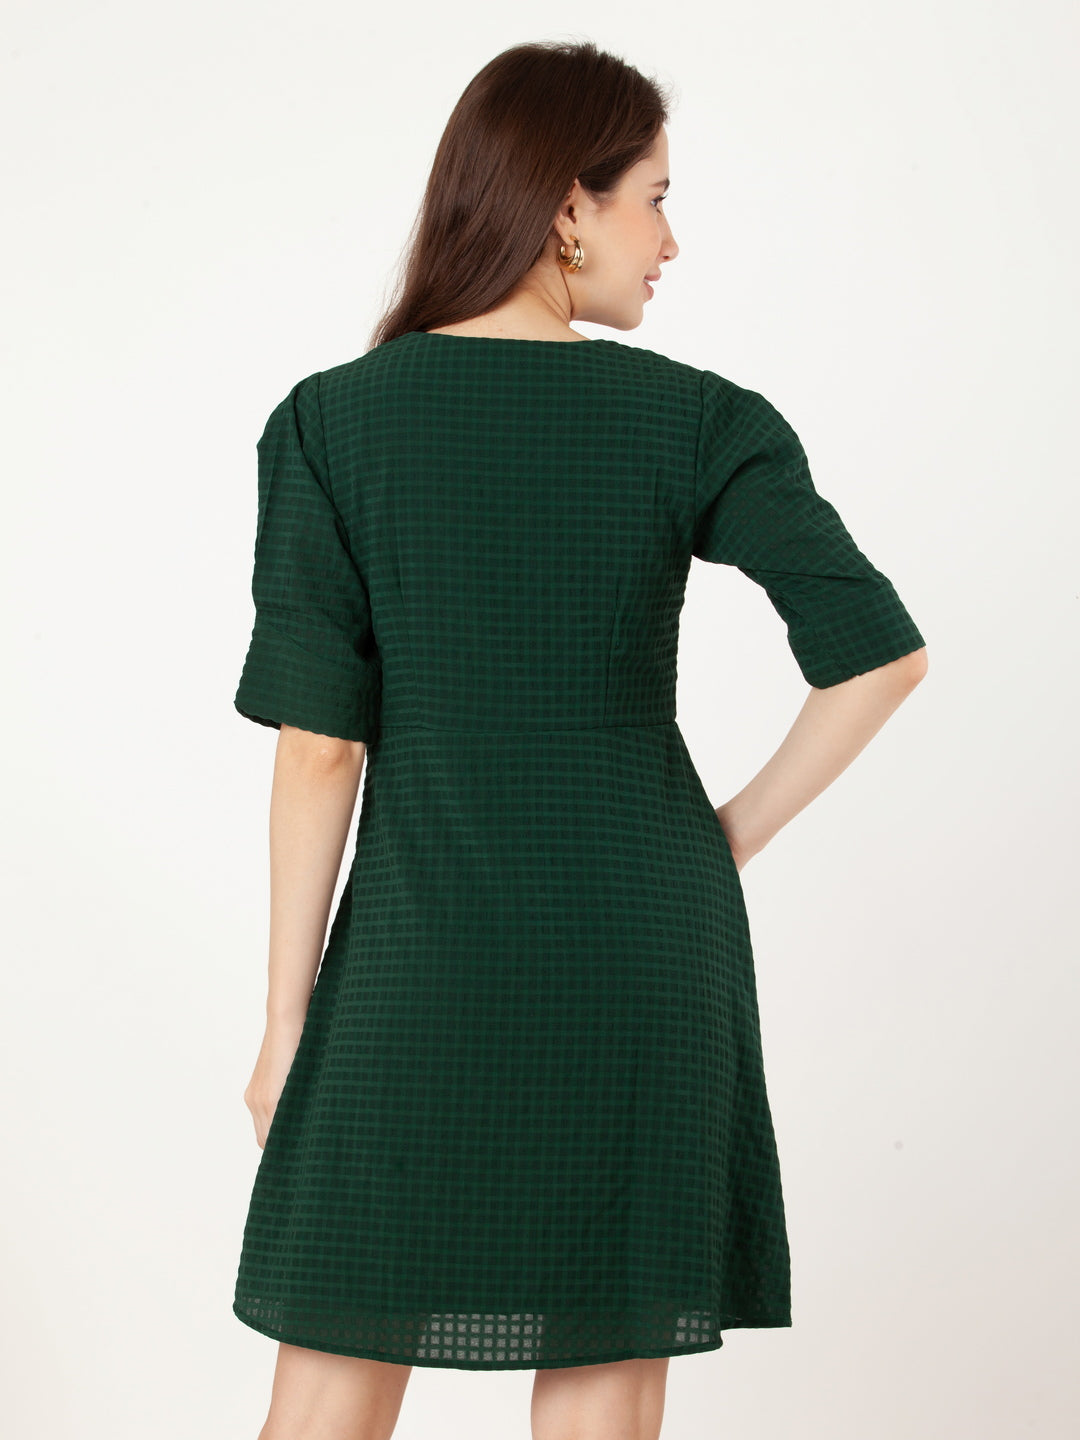 Green_Checks_A-Line_Short_Dress_4